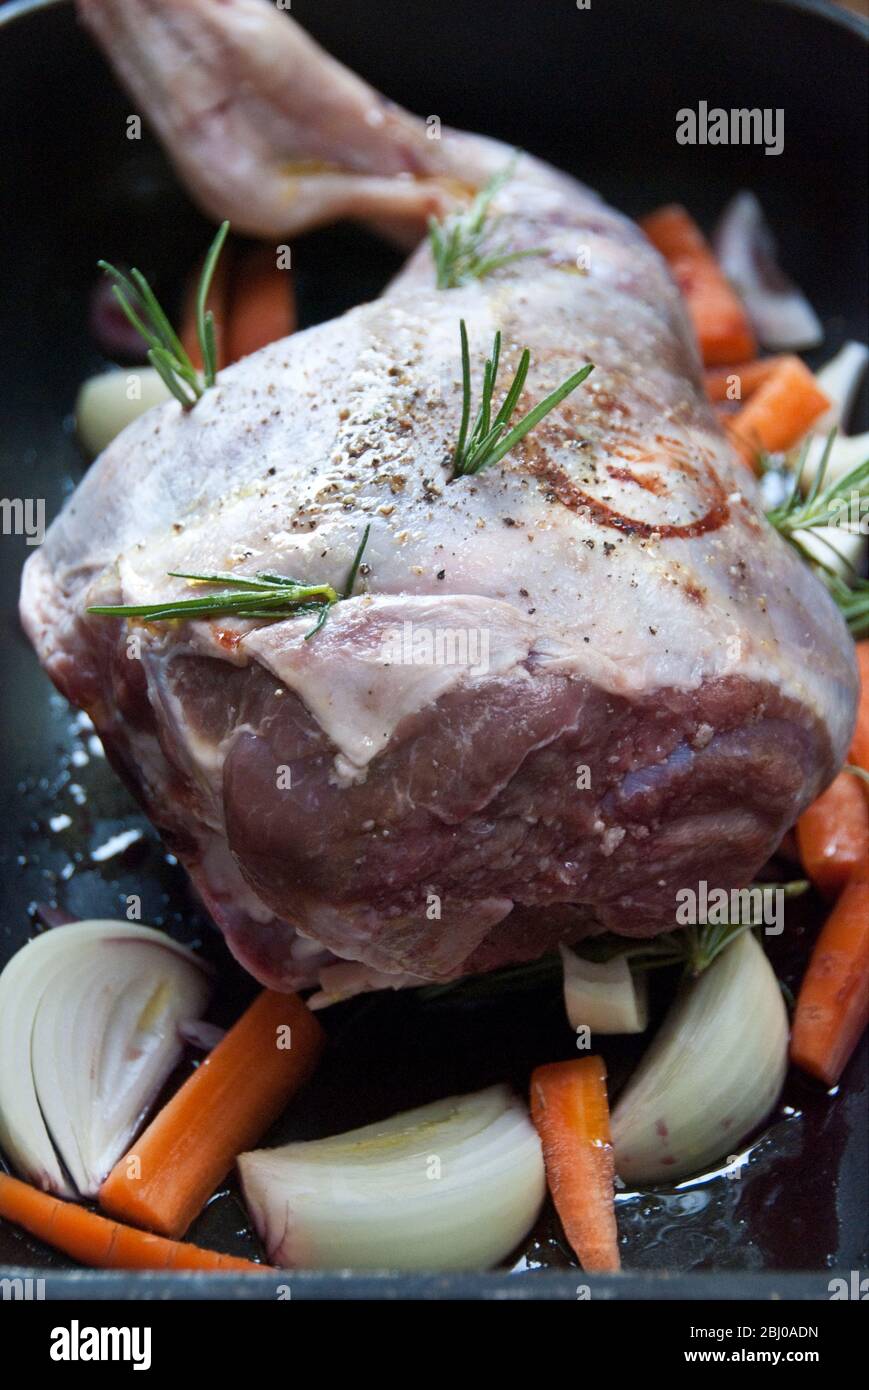 Coscia di agnello pronta per essere messa in forno con cipolle, rosmarino, carote, pepe nero, sale grosso, olio d'oliva e un pizzico di vino rosso. - Foto Stock